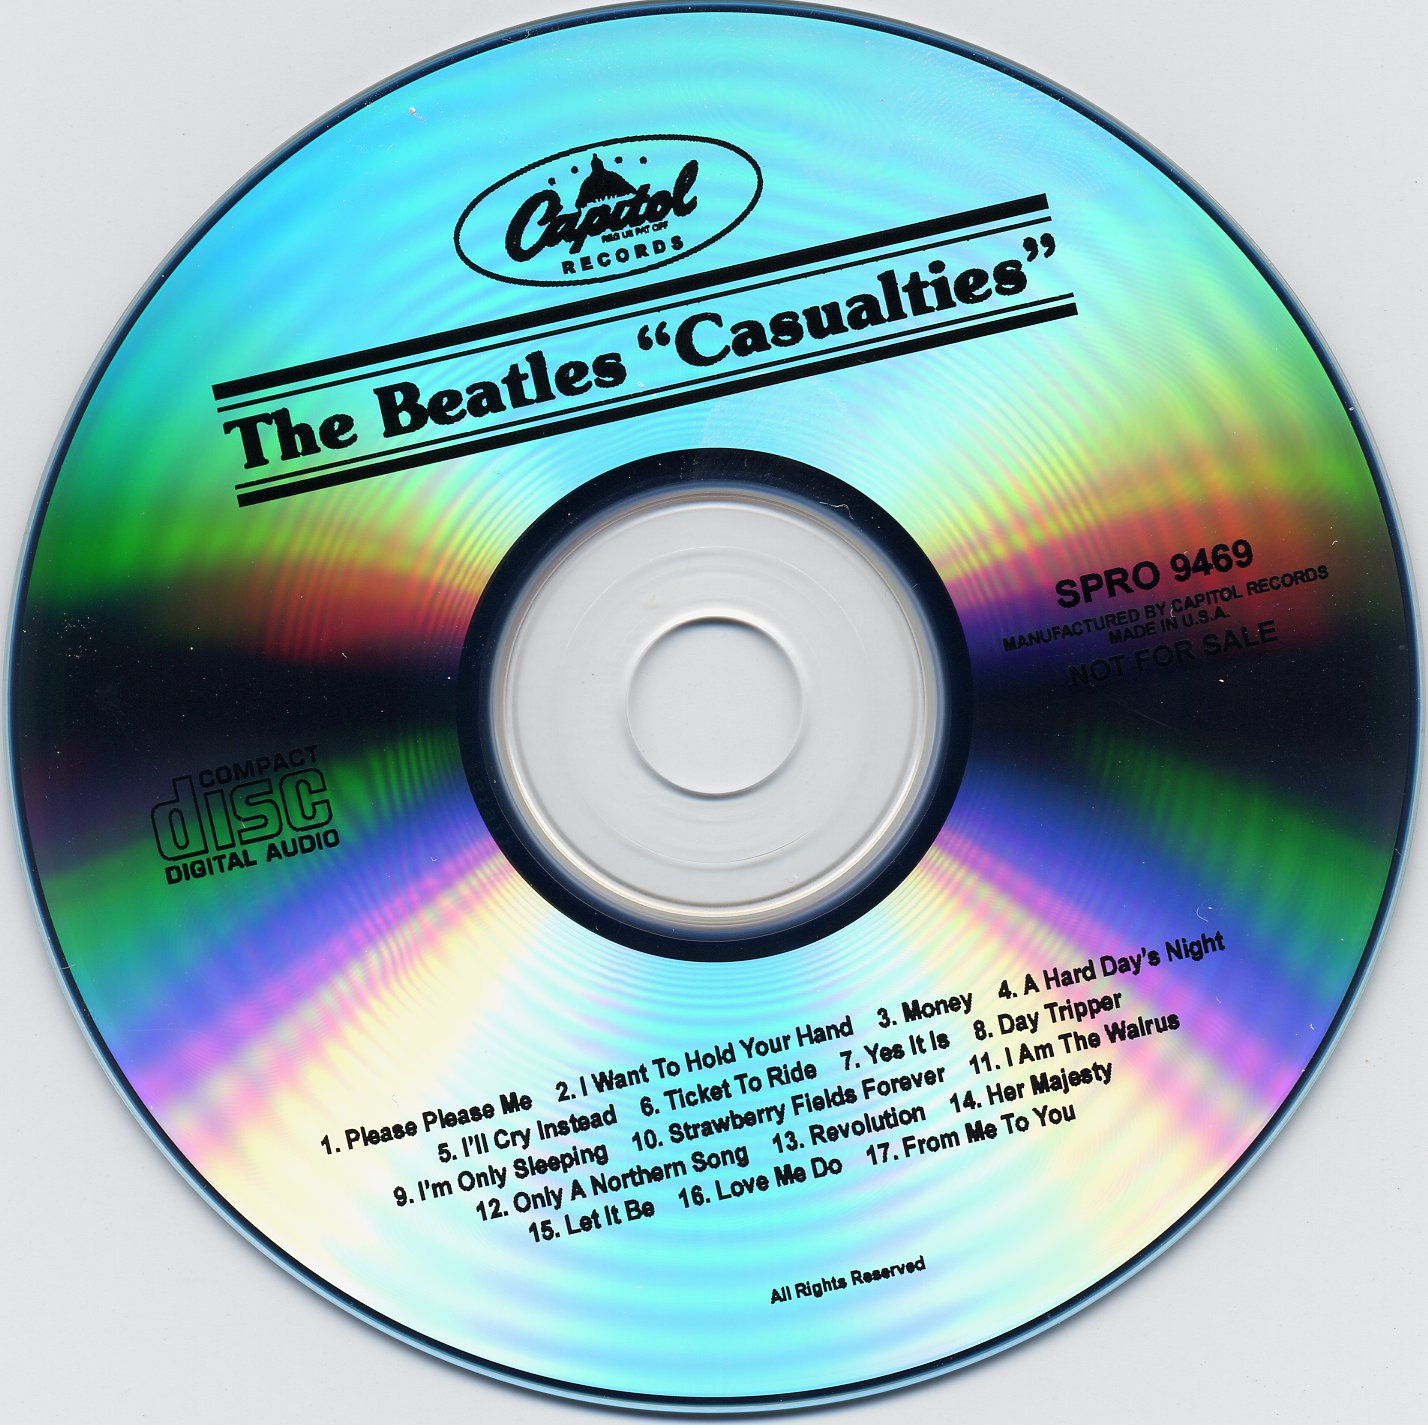 The Beatles - Casualties 2003 - disc.jpg